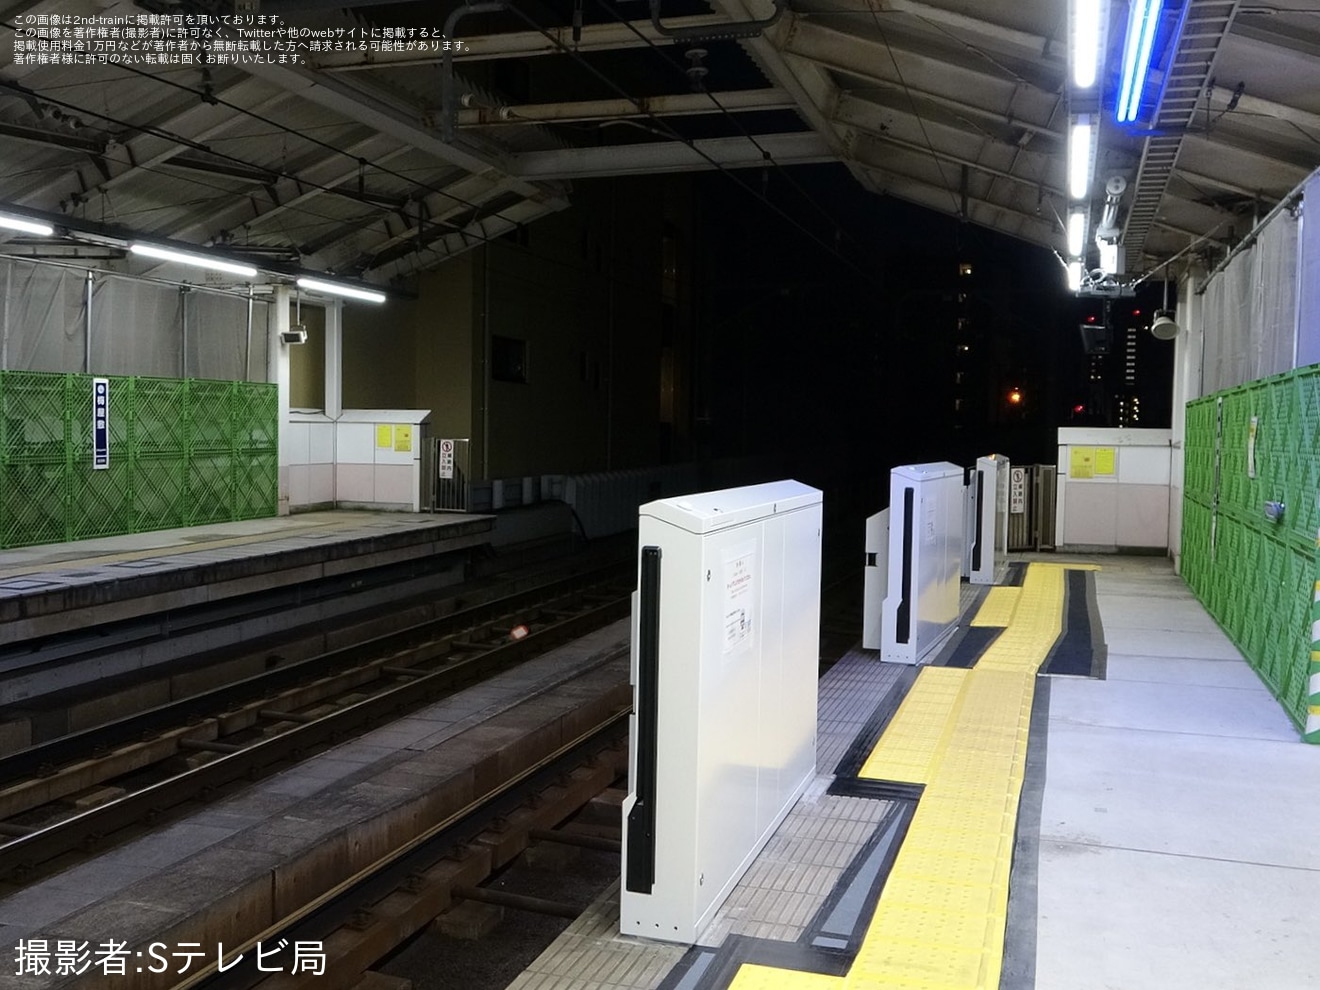 【京急】梅屋敷駅2番線にホームドアが設置の拡大写真